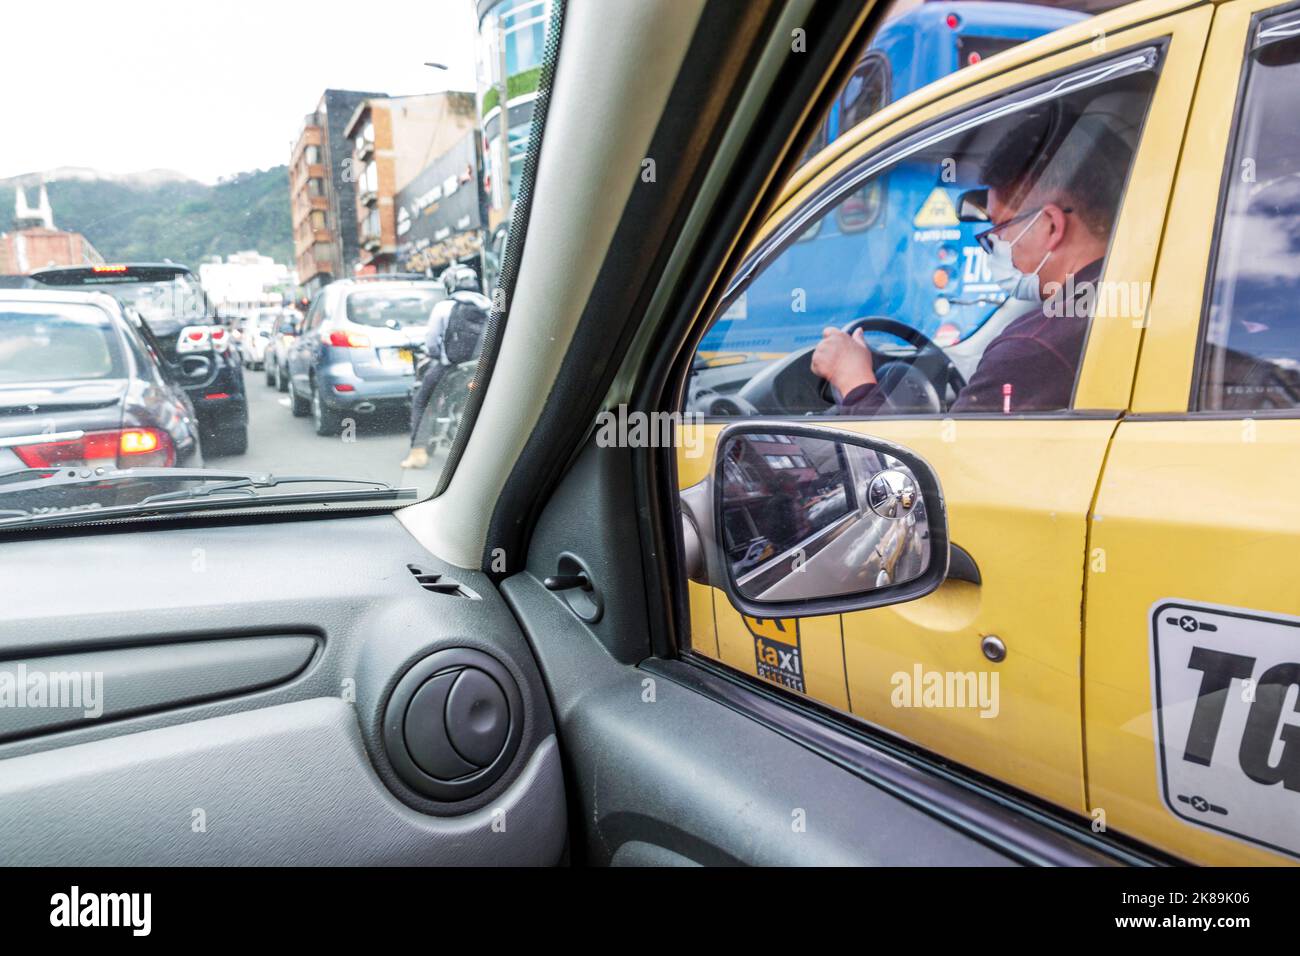 Bogota Colombia,Teusaquillo Calle 63 Uber ride,taxi taxi taxi tassicab lavoratori lavoro lavoro lavoro lavoro lavoro lavoro personale carriera carriera lavoro lavoro, m Foto Stock